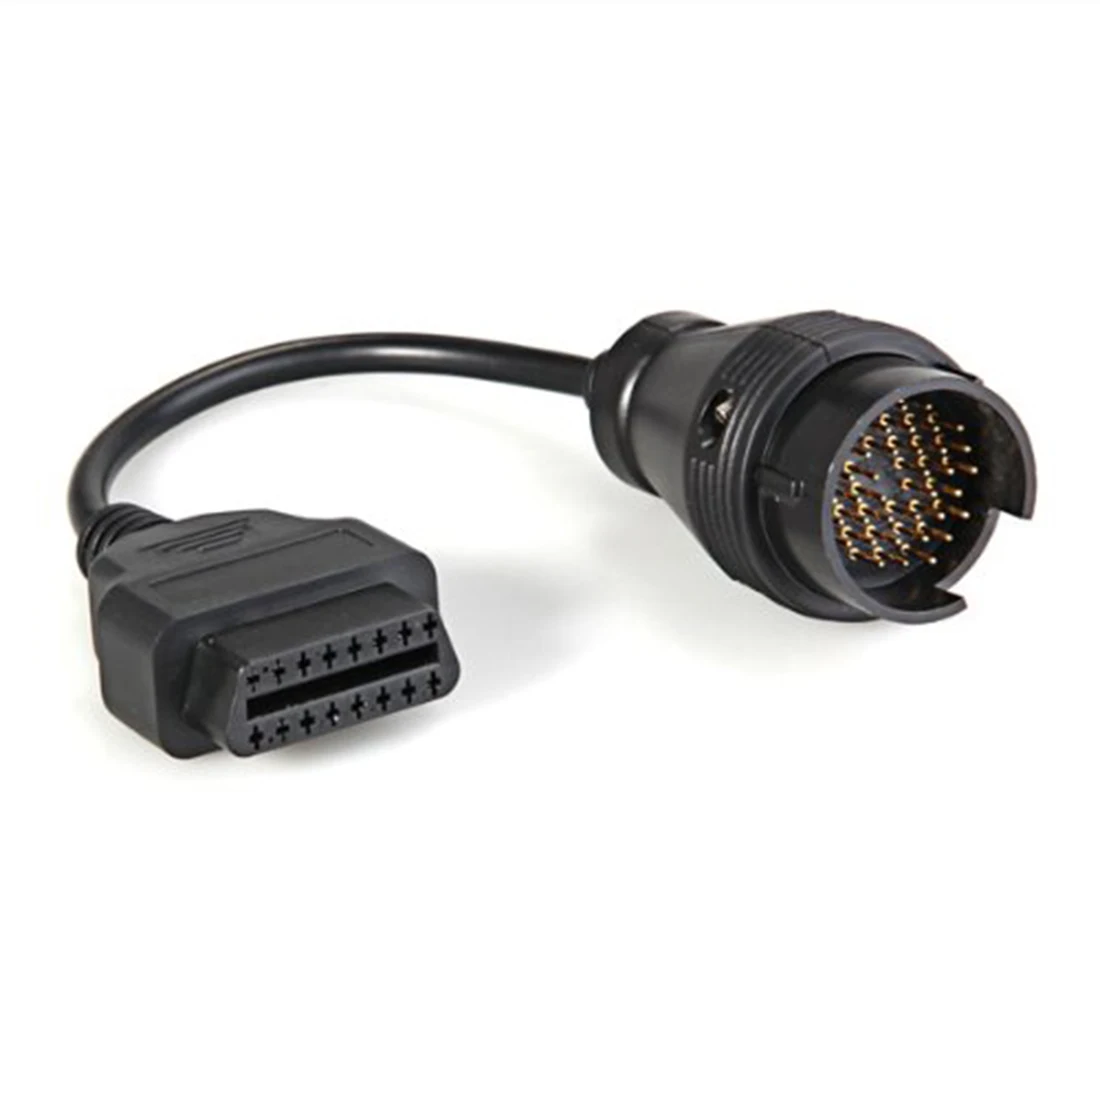 Obd2 OBD 2 II 38 до 16 контакт. автомобиля диагностический кабель адаптер для Mercedes Benz черный